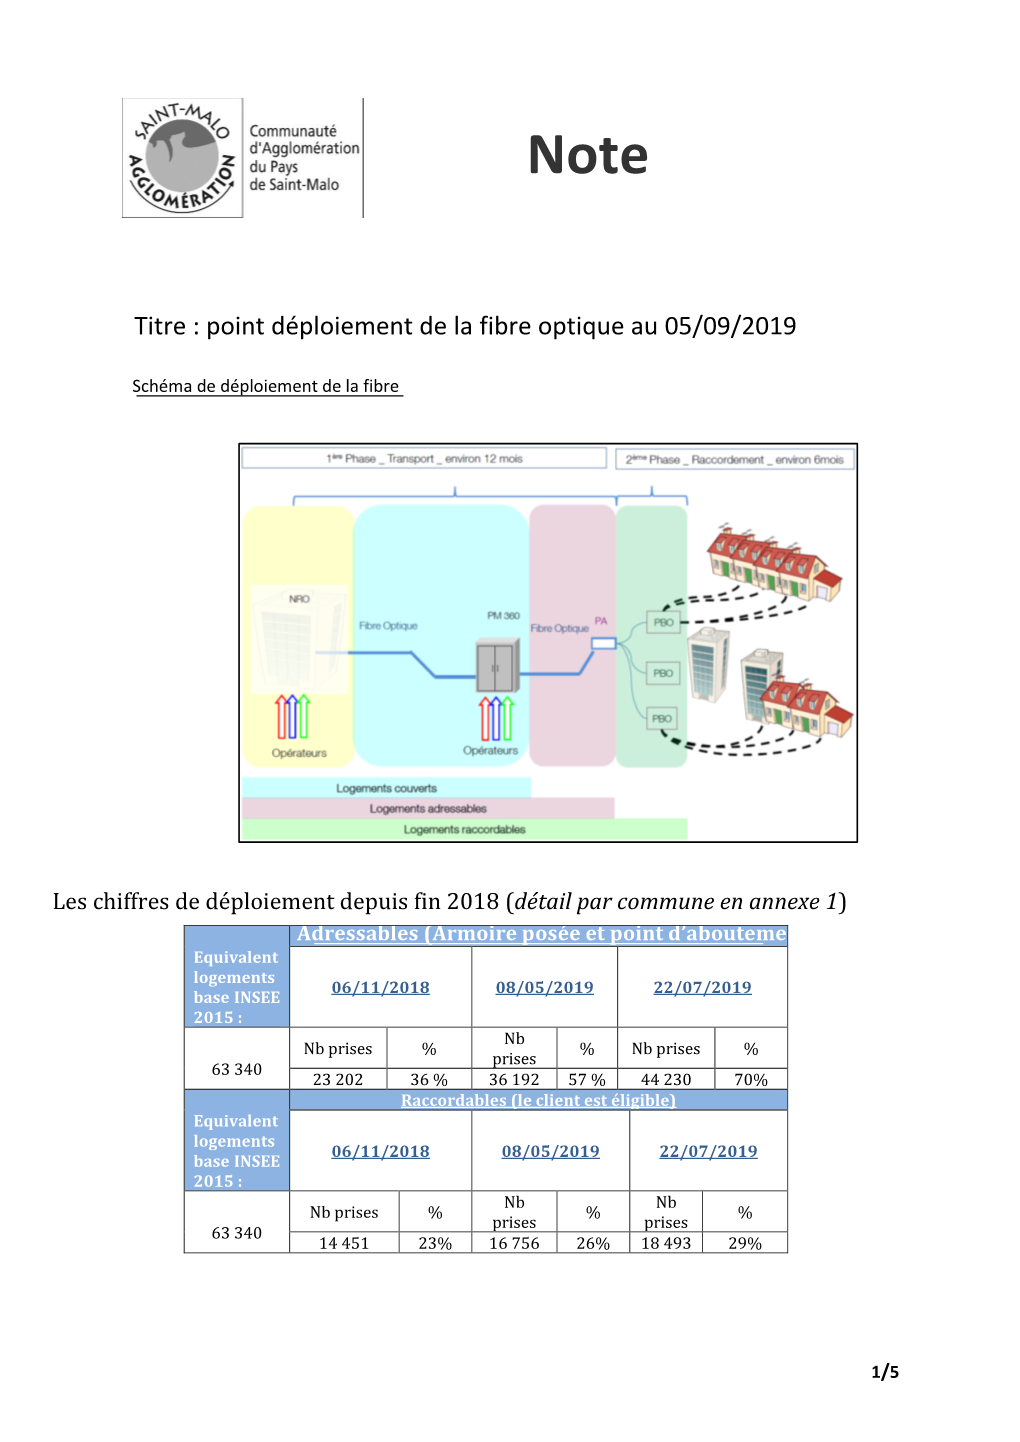 Titre : Point Déploiement De La Fibre Optique Au 05/09/2019